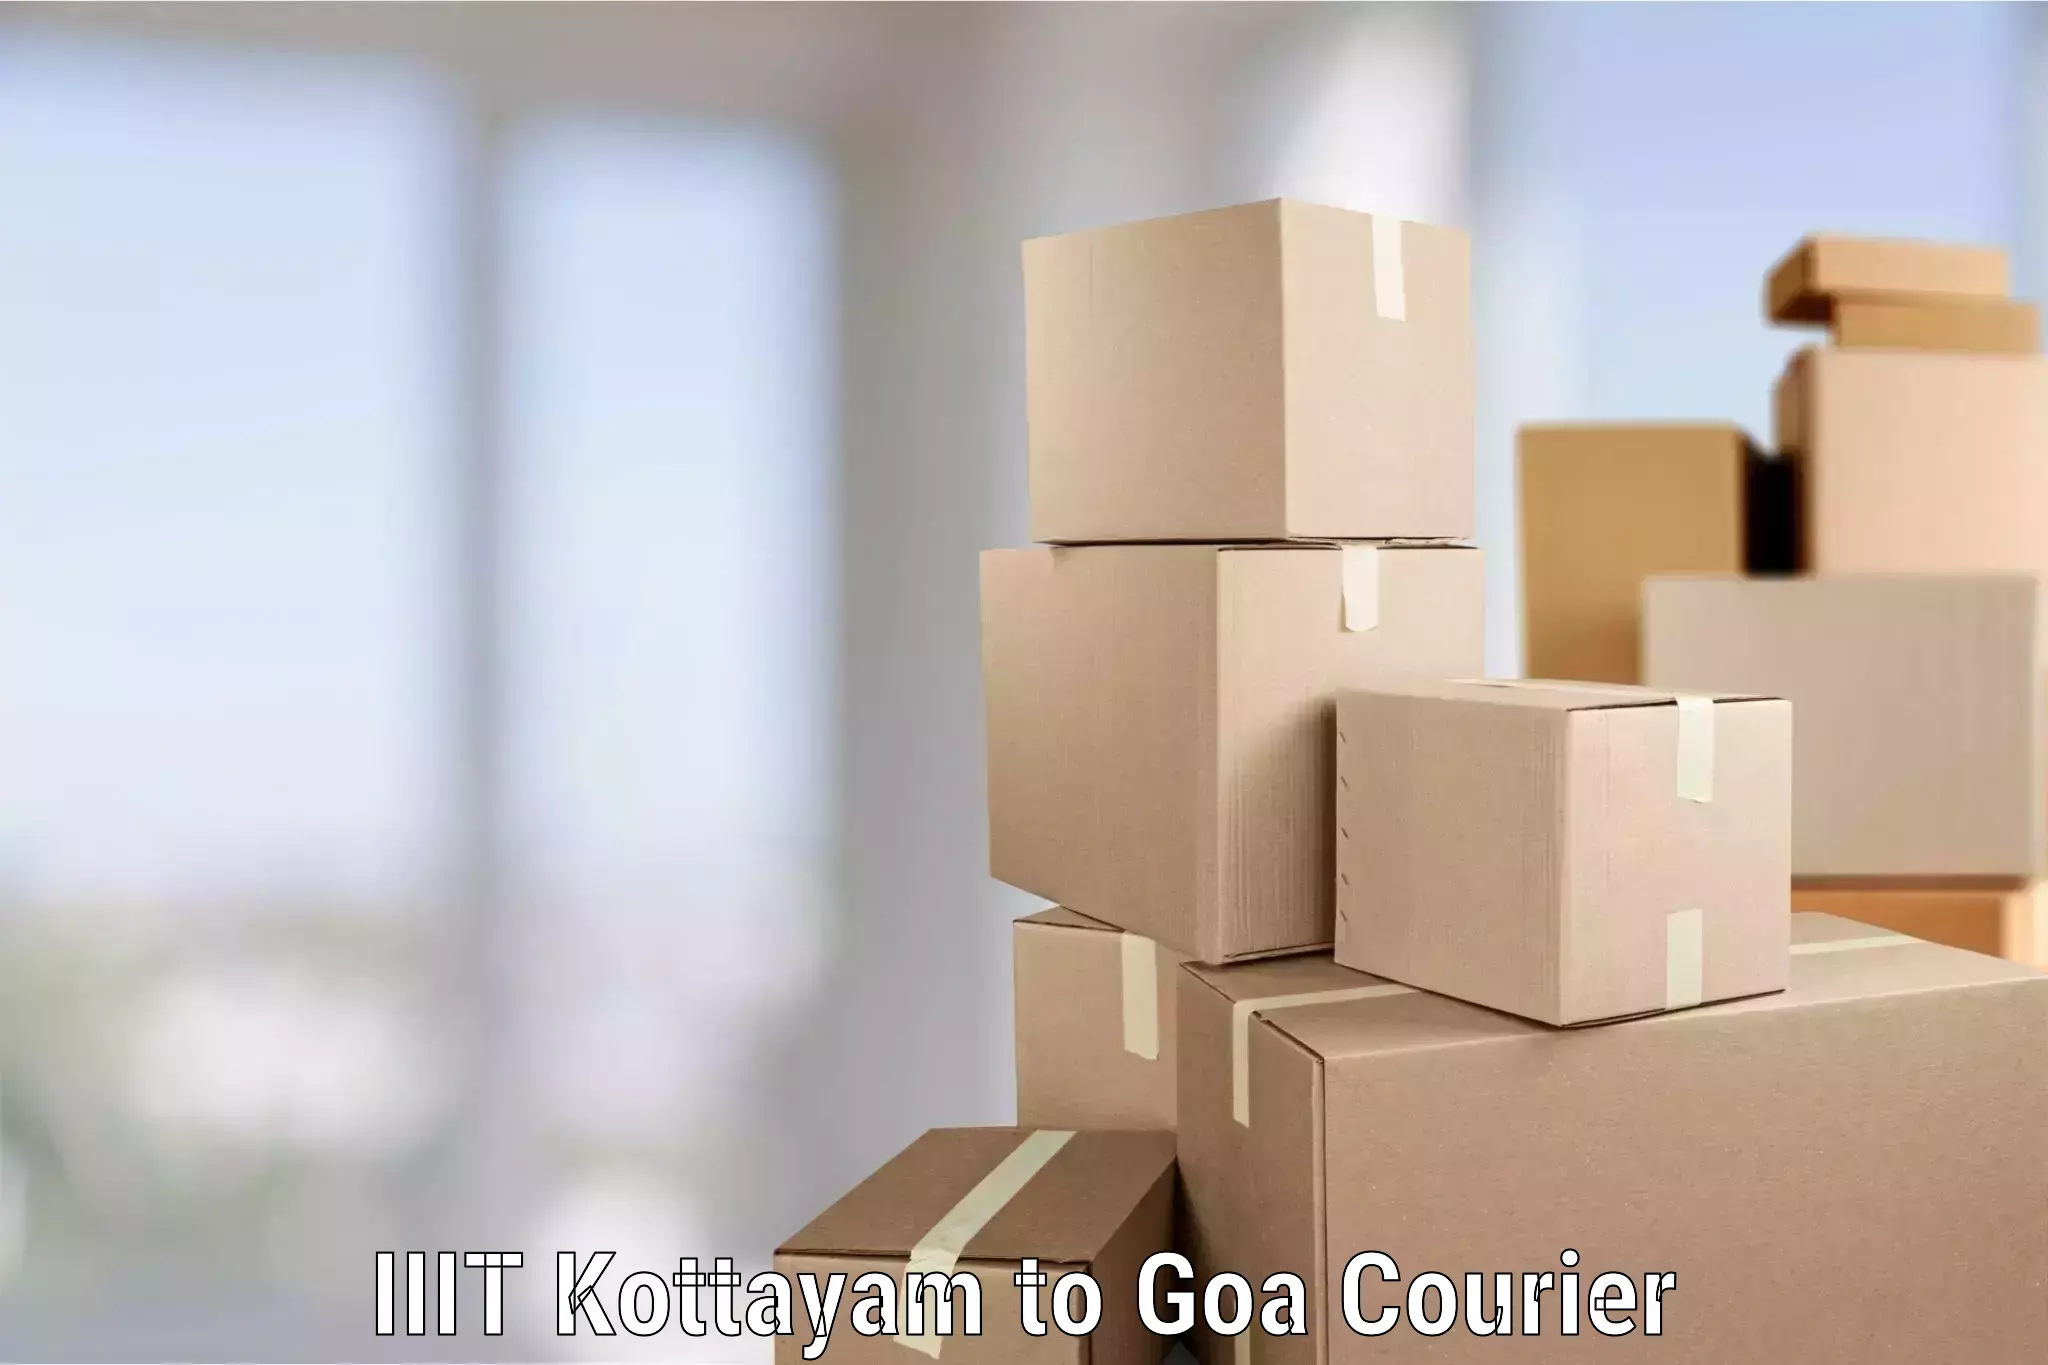 Professional furniture movers IIIT Kottayam to IIT Goa